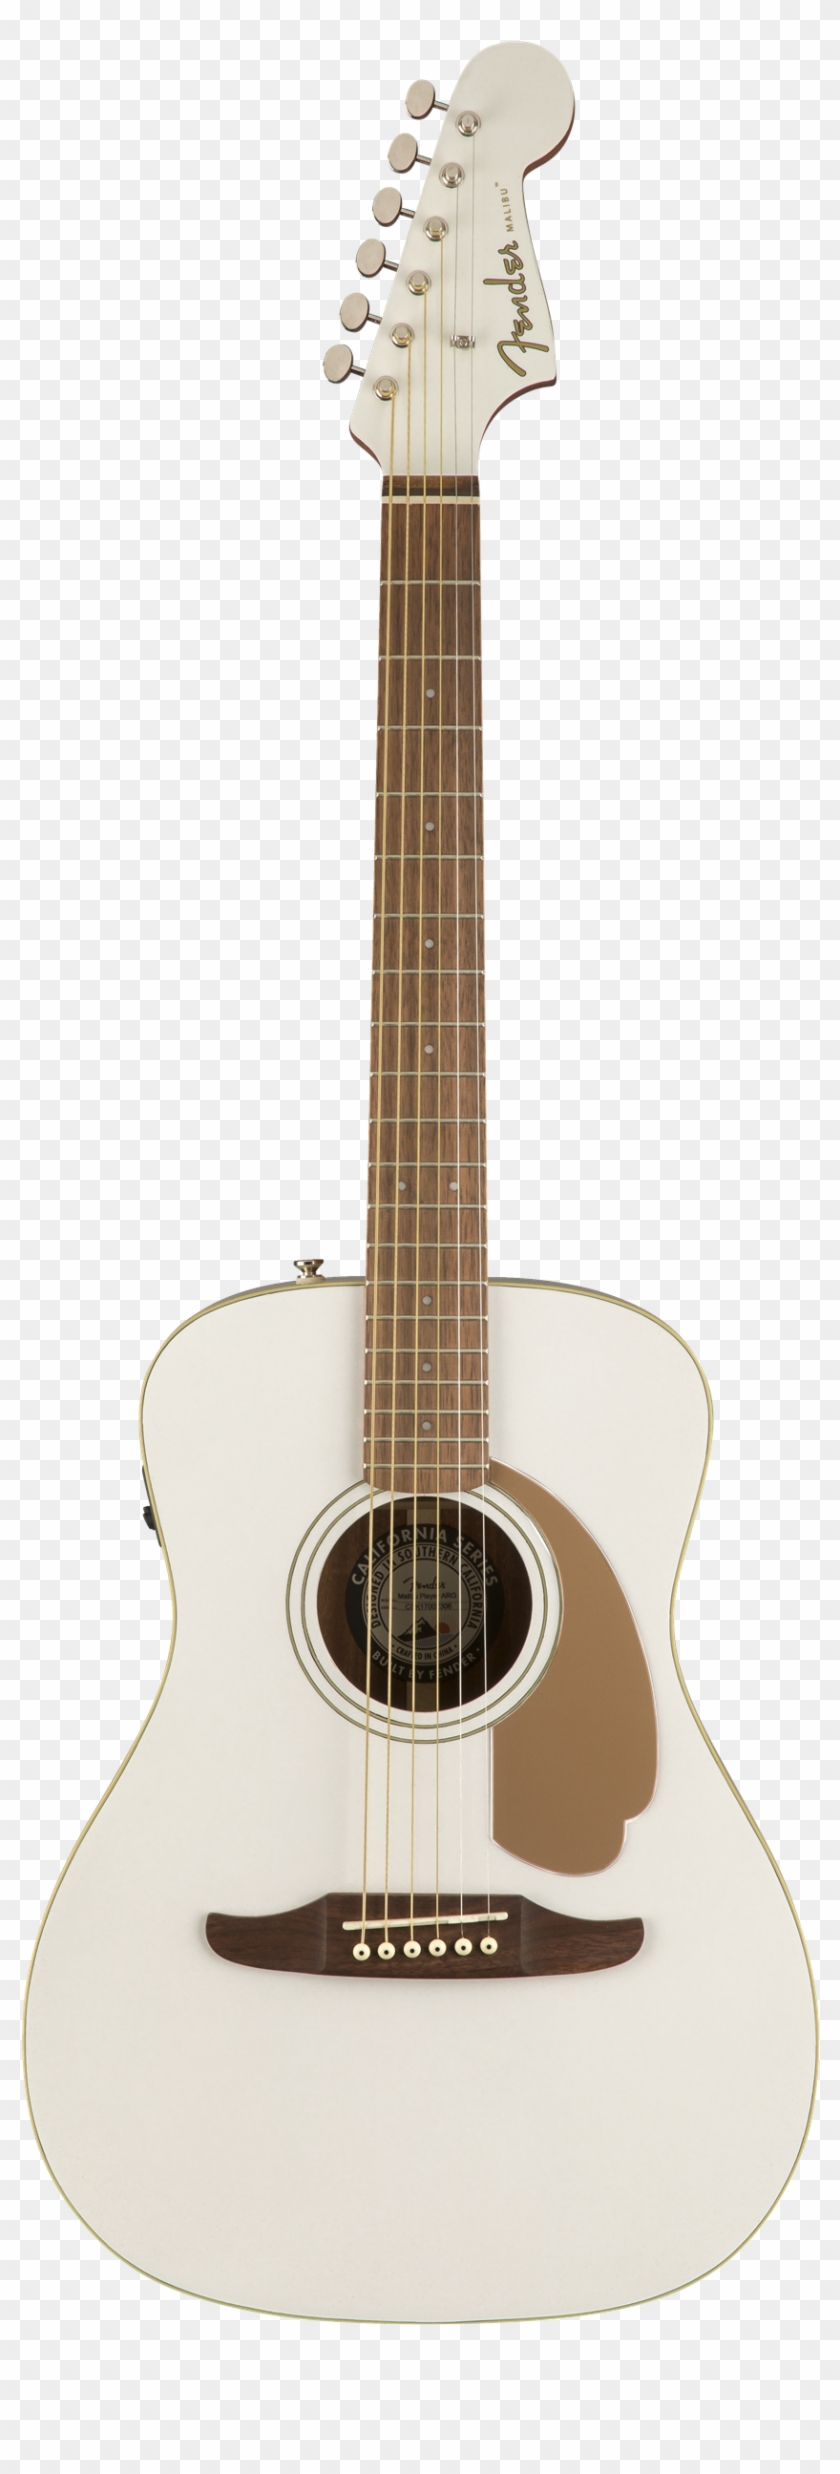 Transparent Acoustic Guitar Clipart